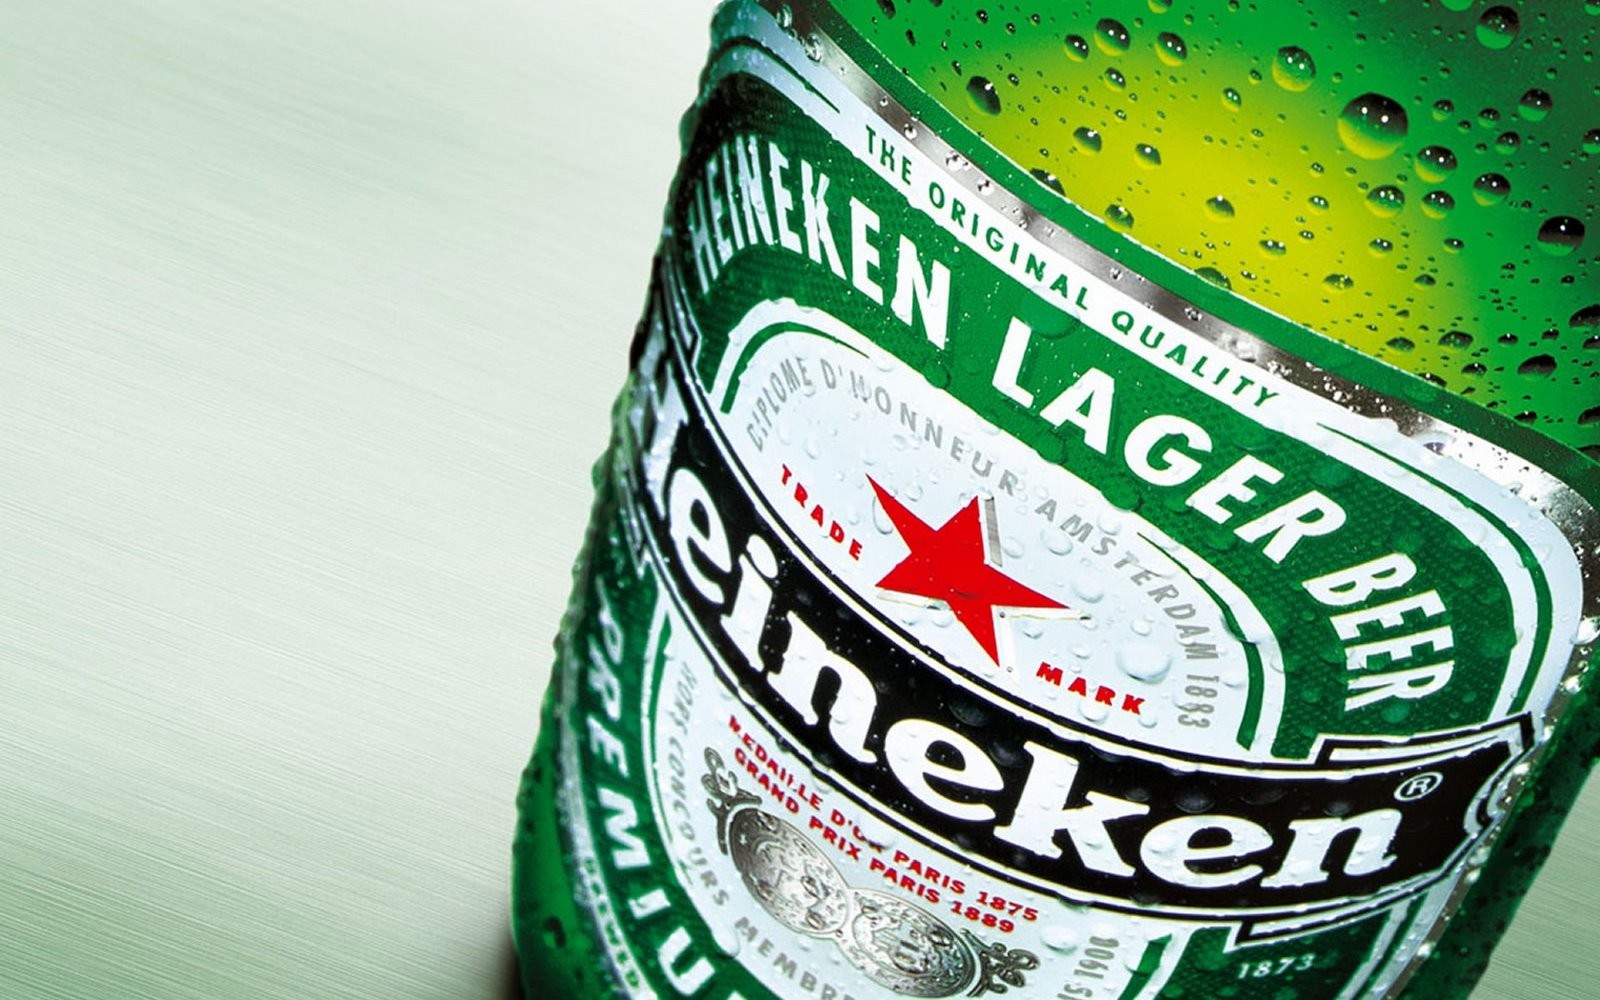 General 1600x1000 beer Heineken logo bottles alcohol numbers brand closeup simple background